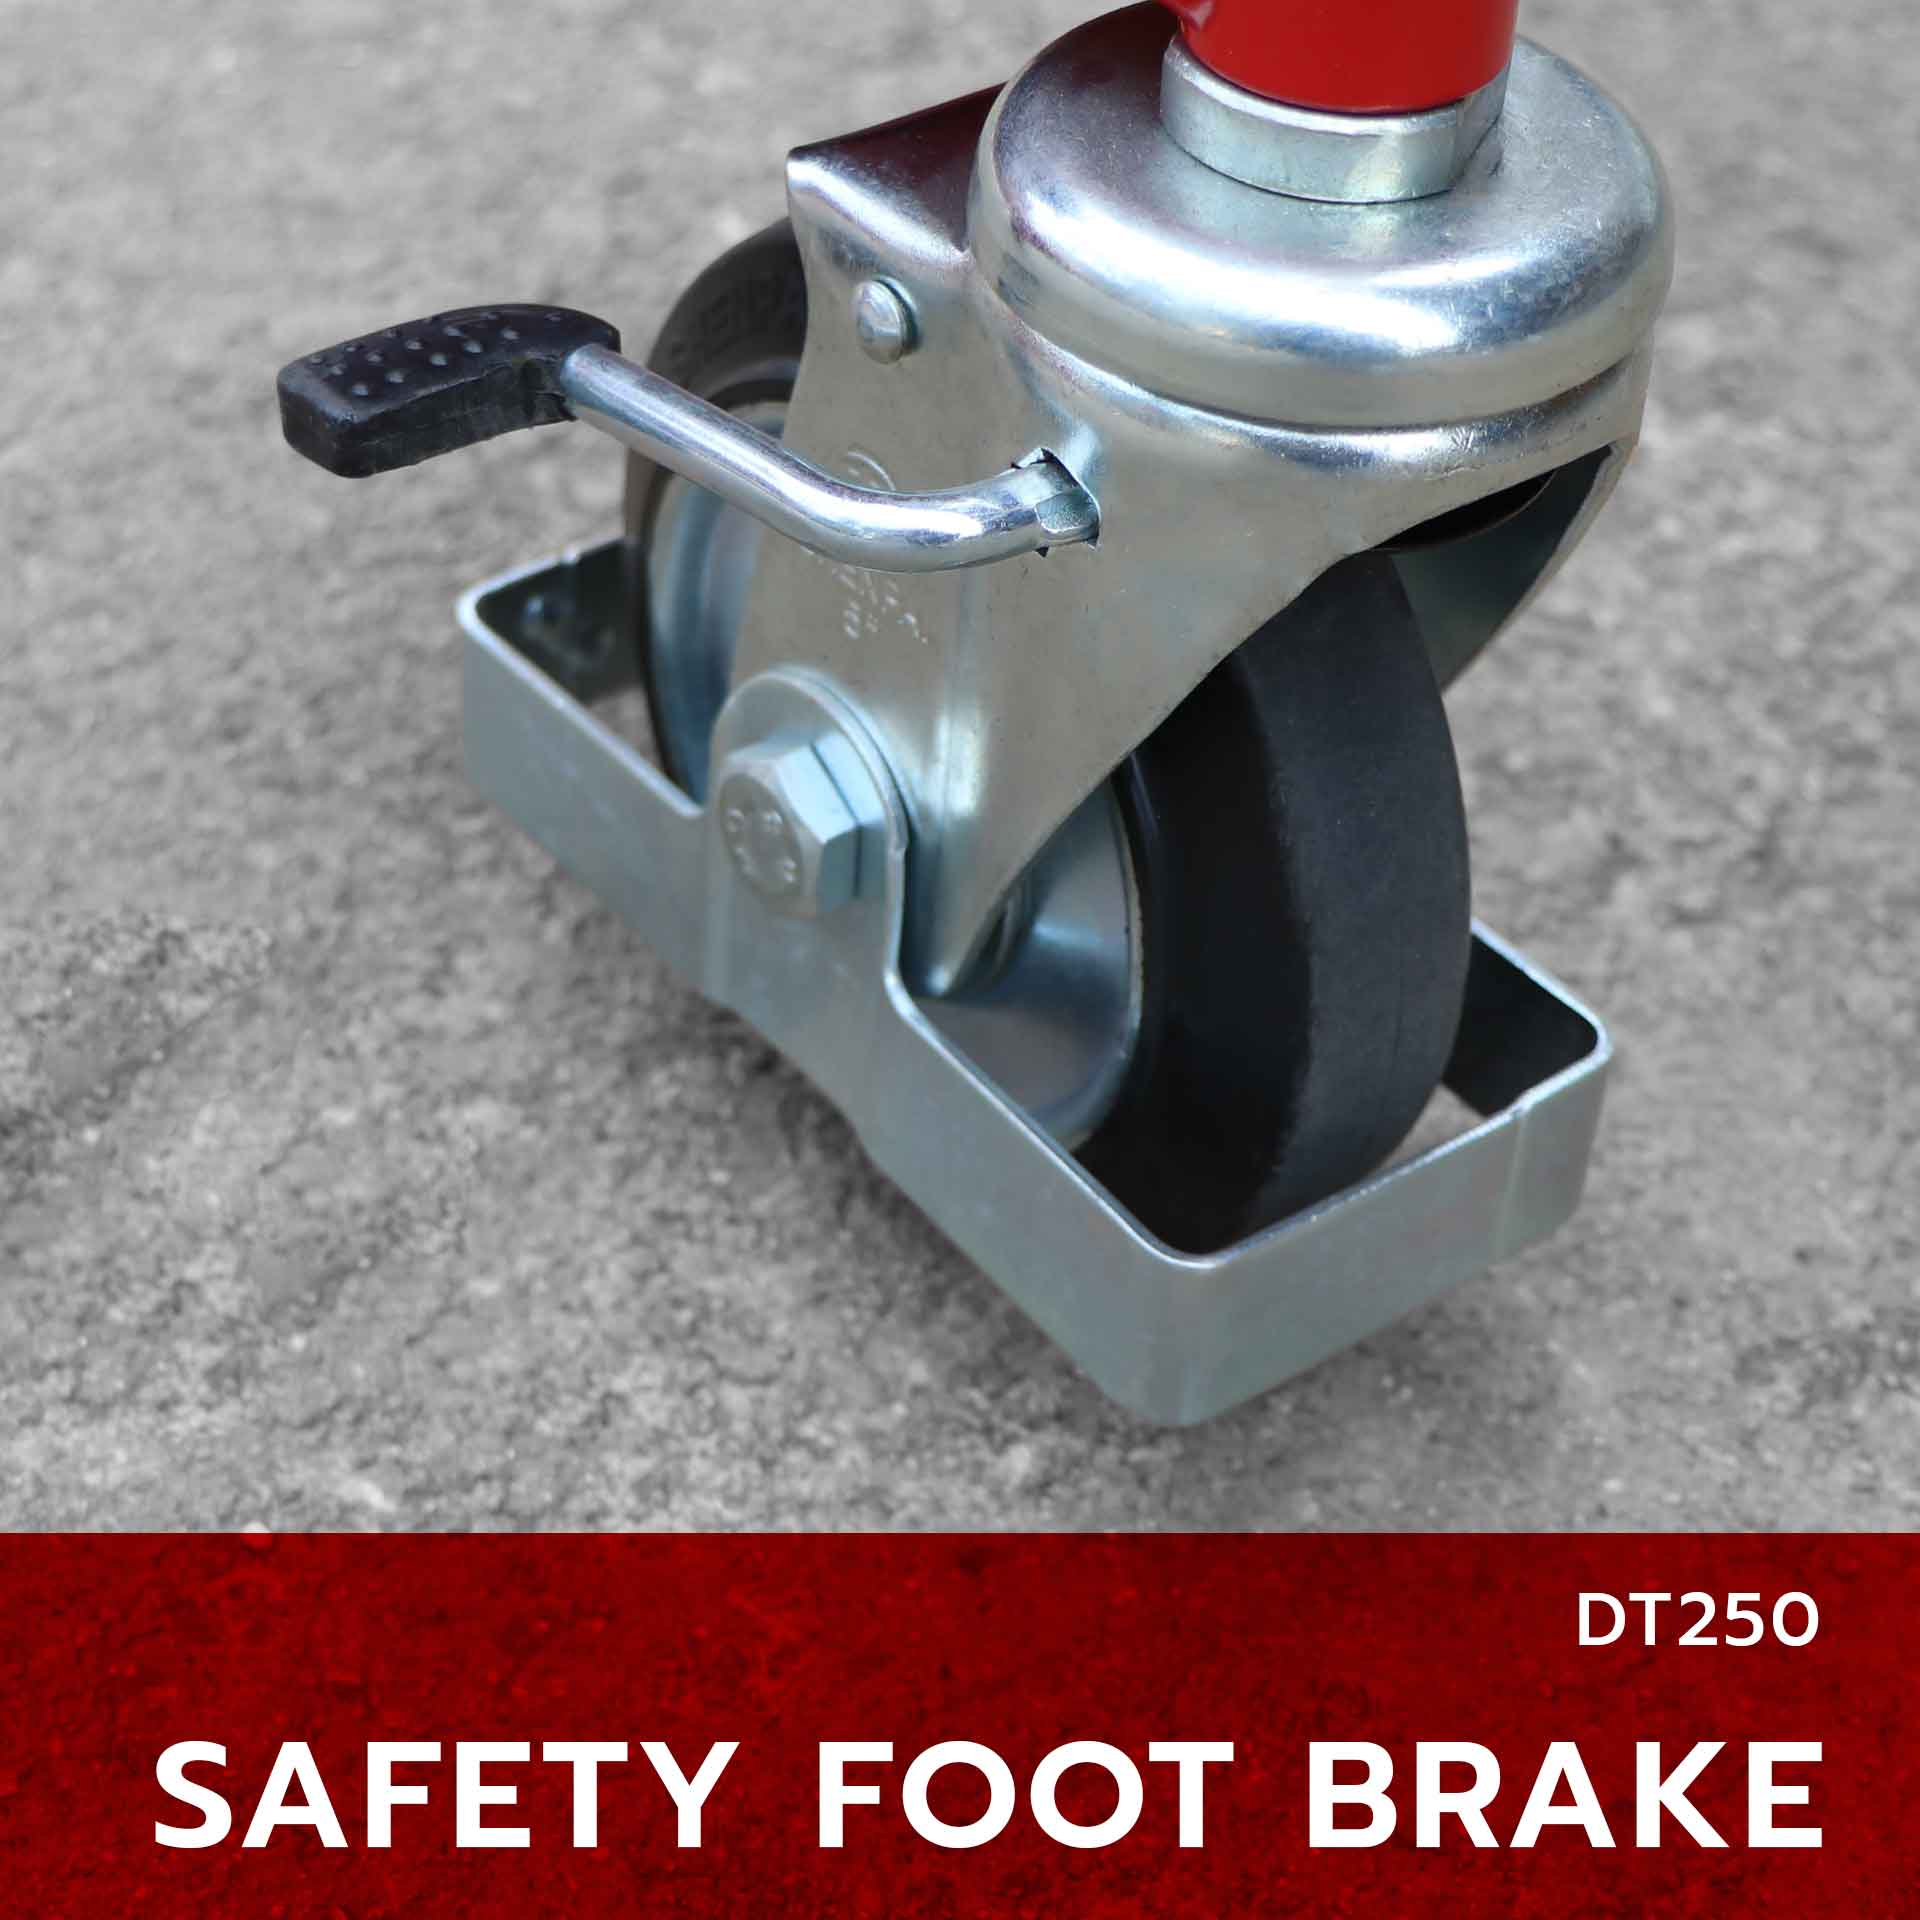 Hydraulic drum truck safety foot brake dt250